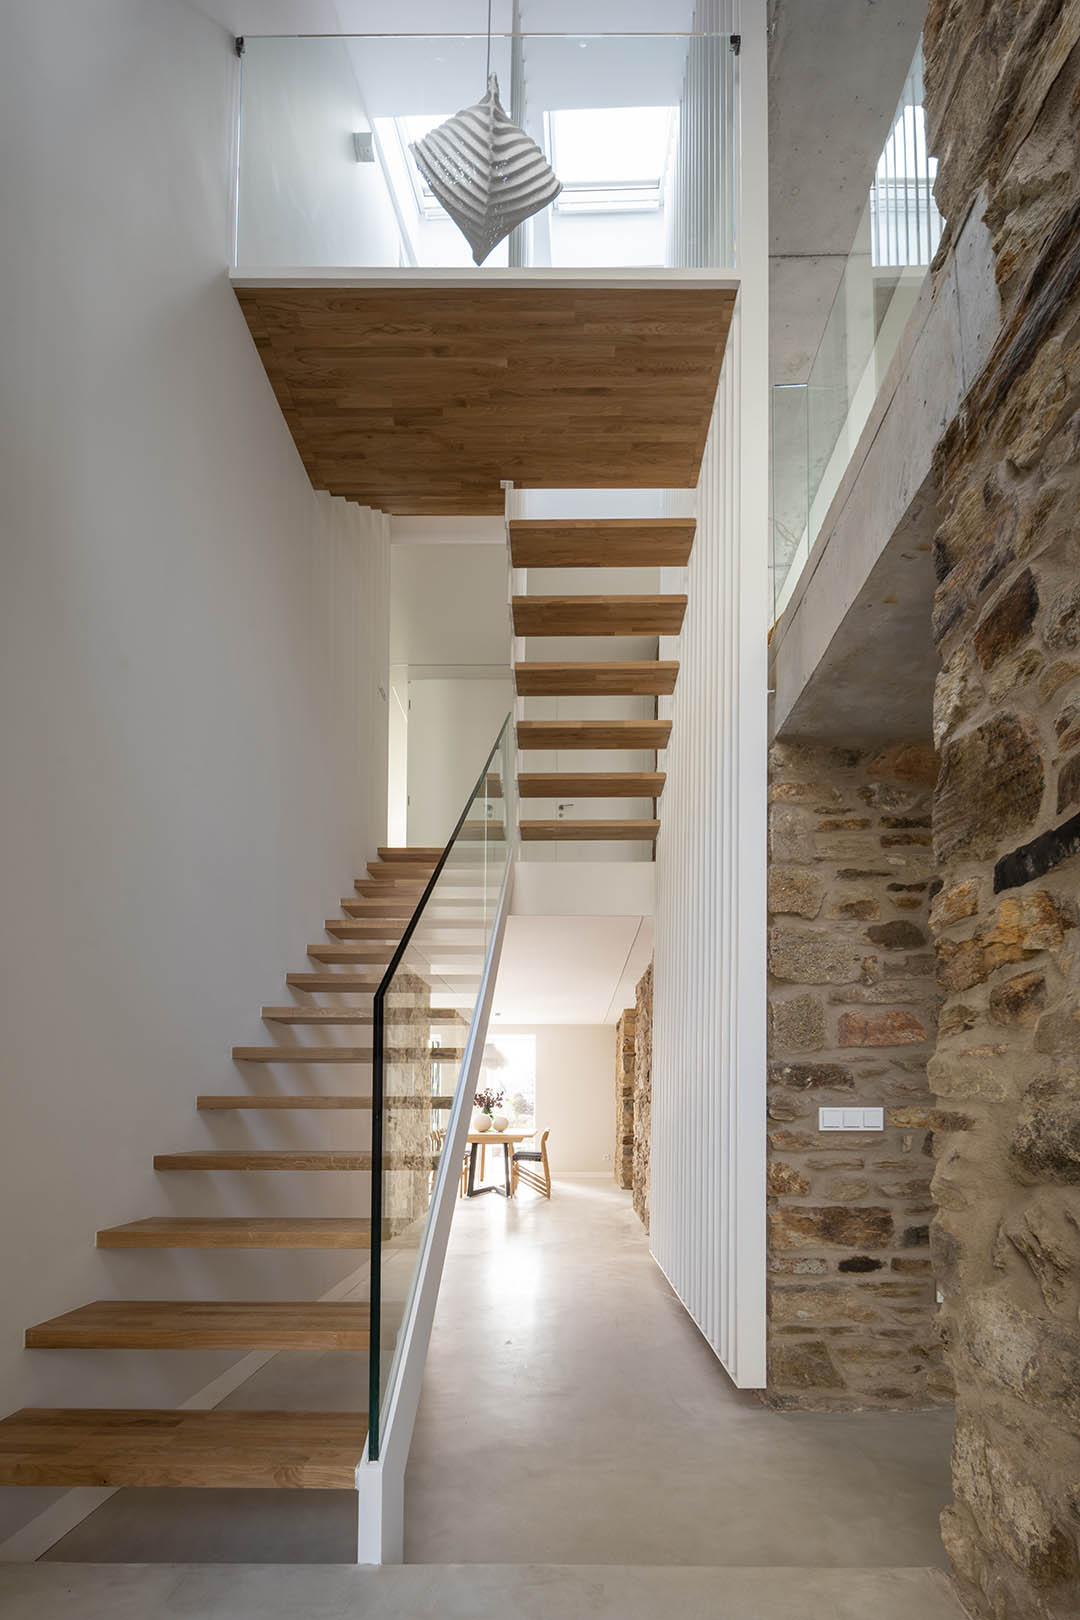 Reforma vivienda, arquitectura interior, escaleras. Diseño Santos Santiago Interiores